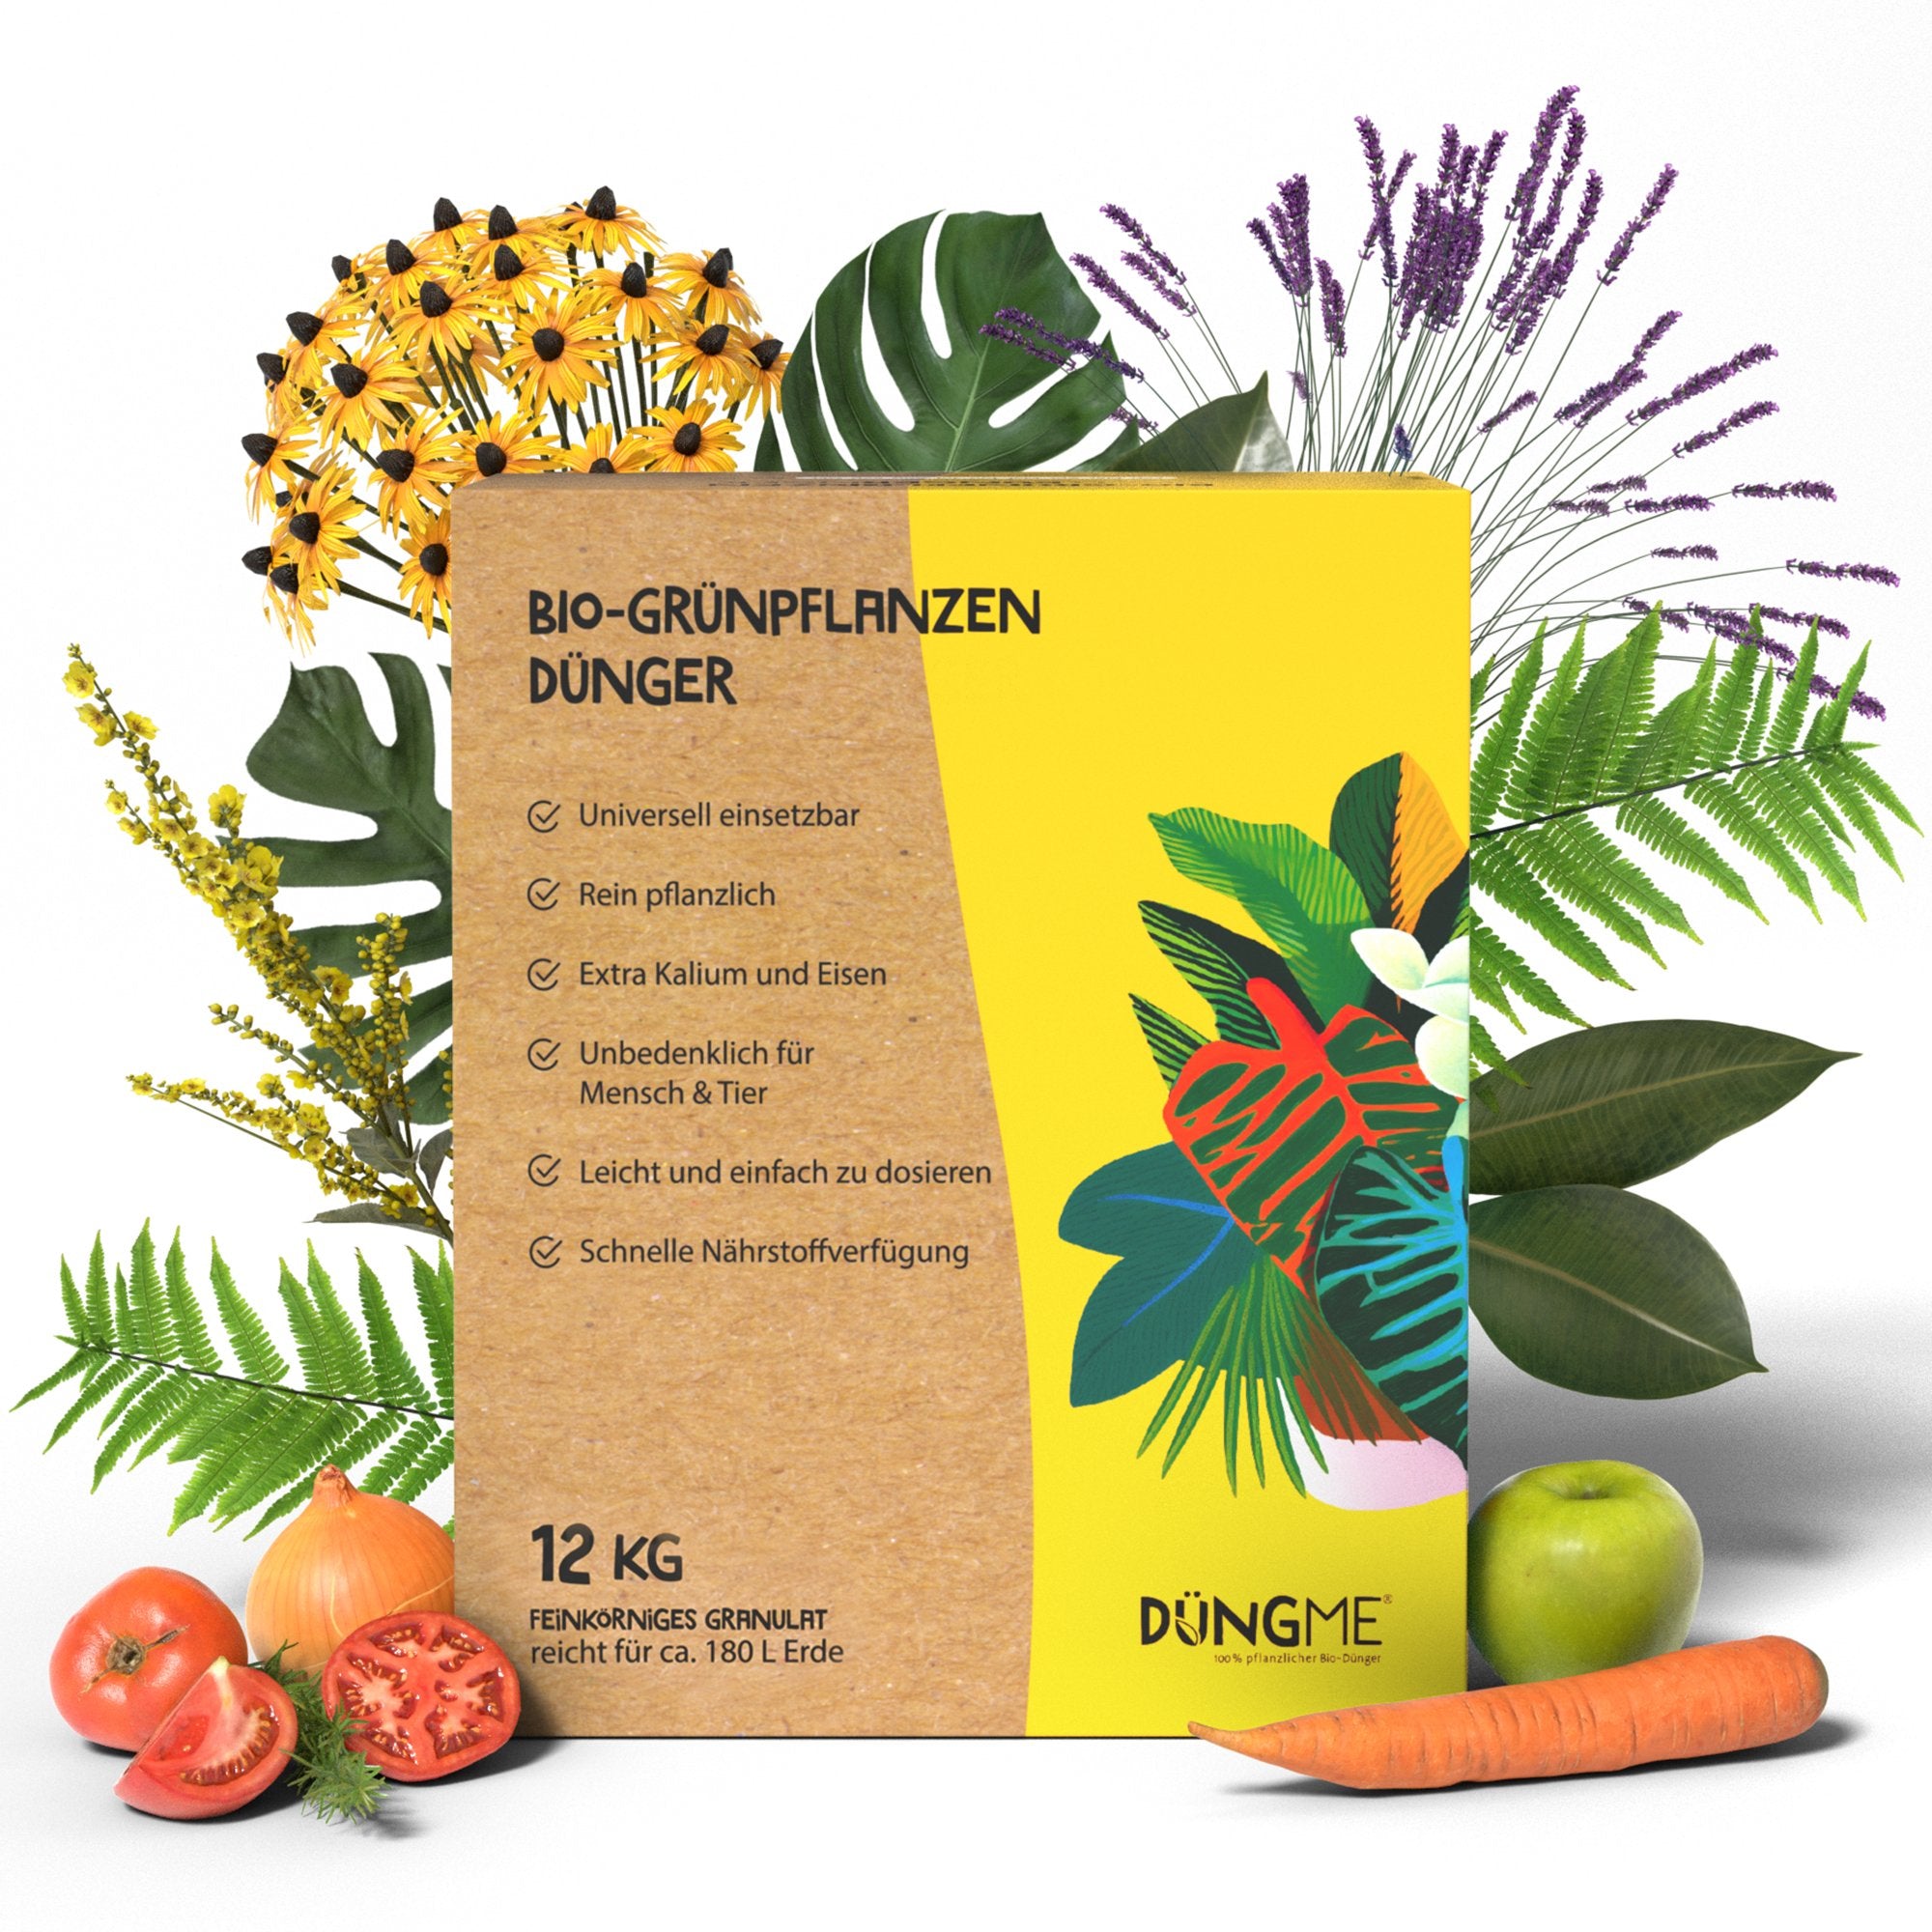 Bio-Grünpflanzendünger - 12 kg